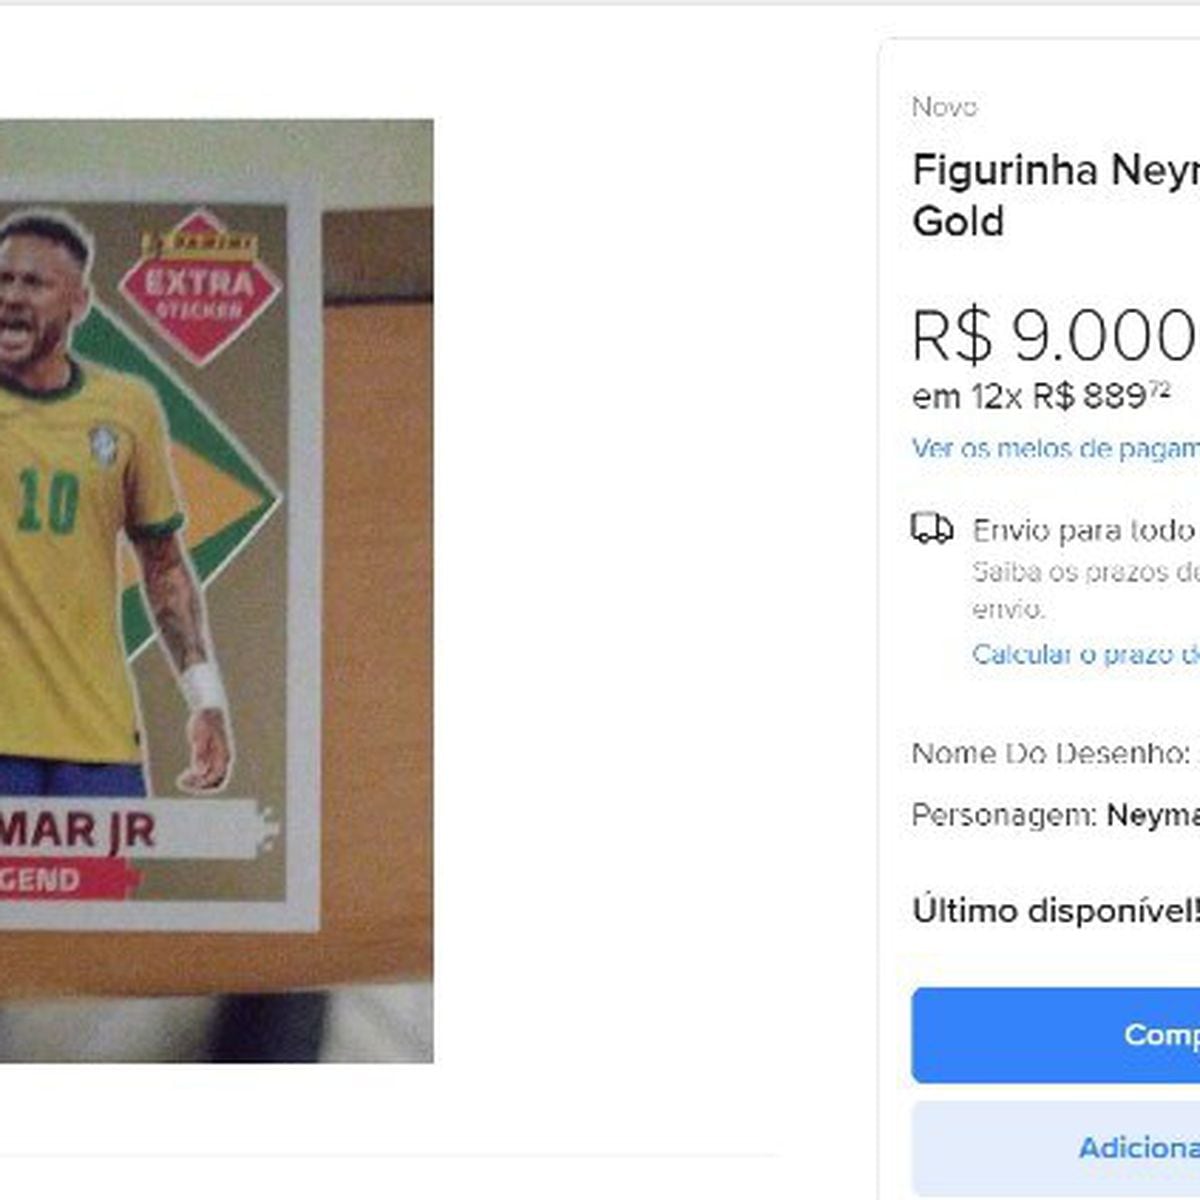 Figurinha rara de Neymar do Álbum da Copa é vendida por R$ 9 mil